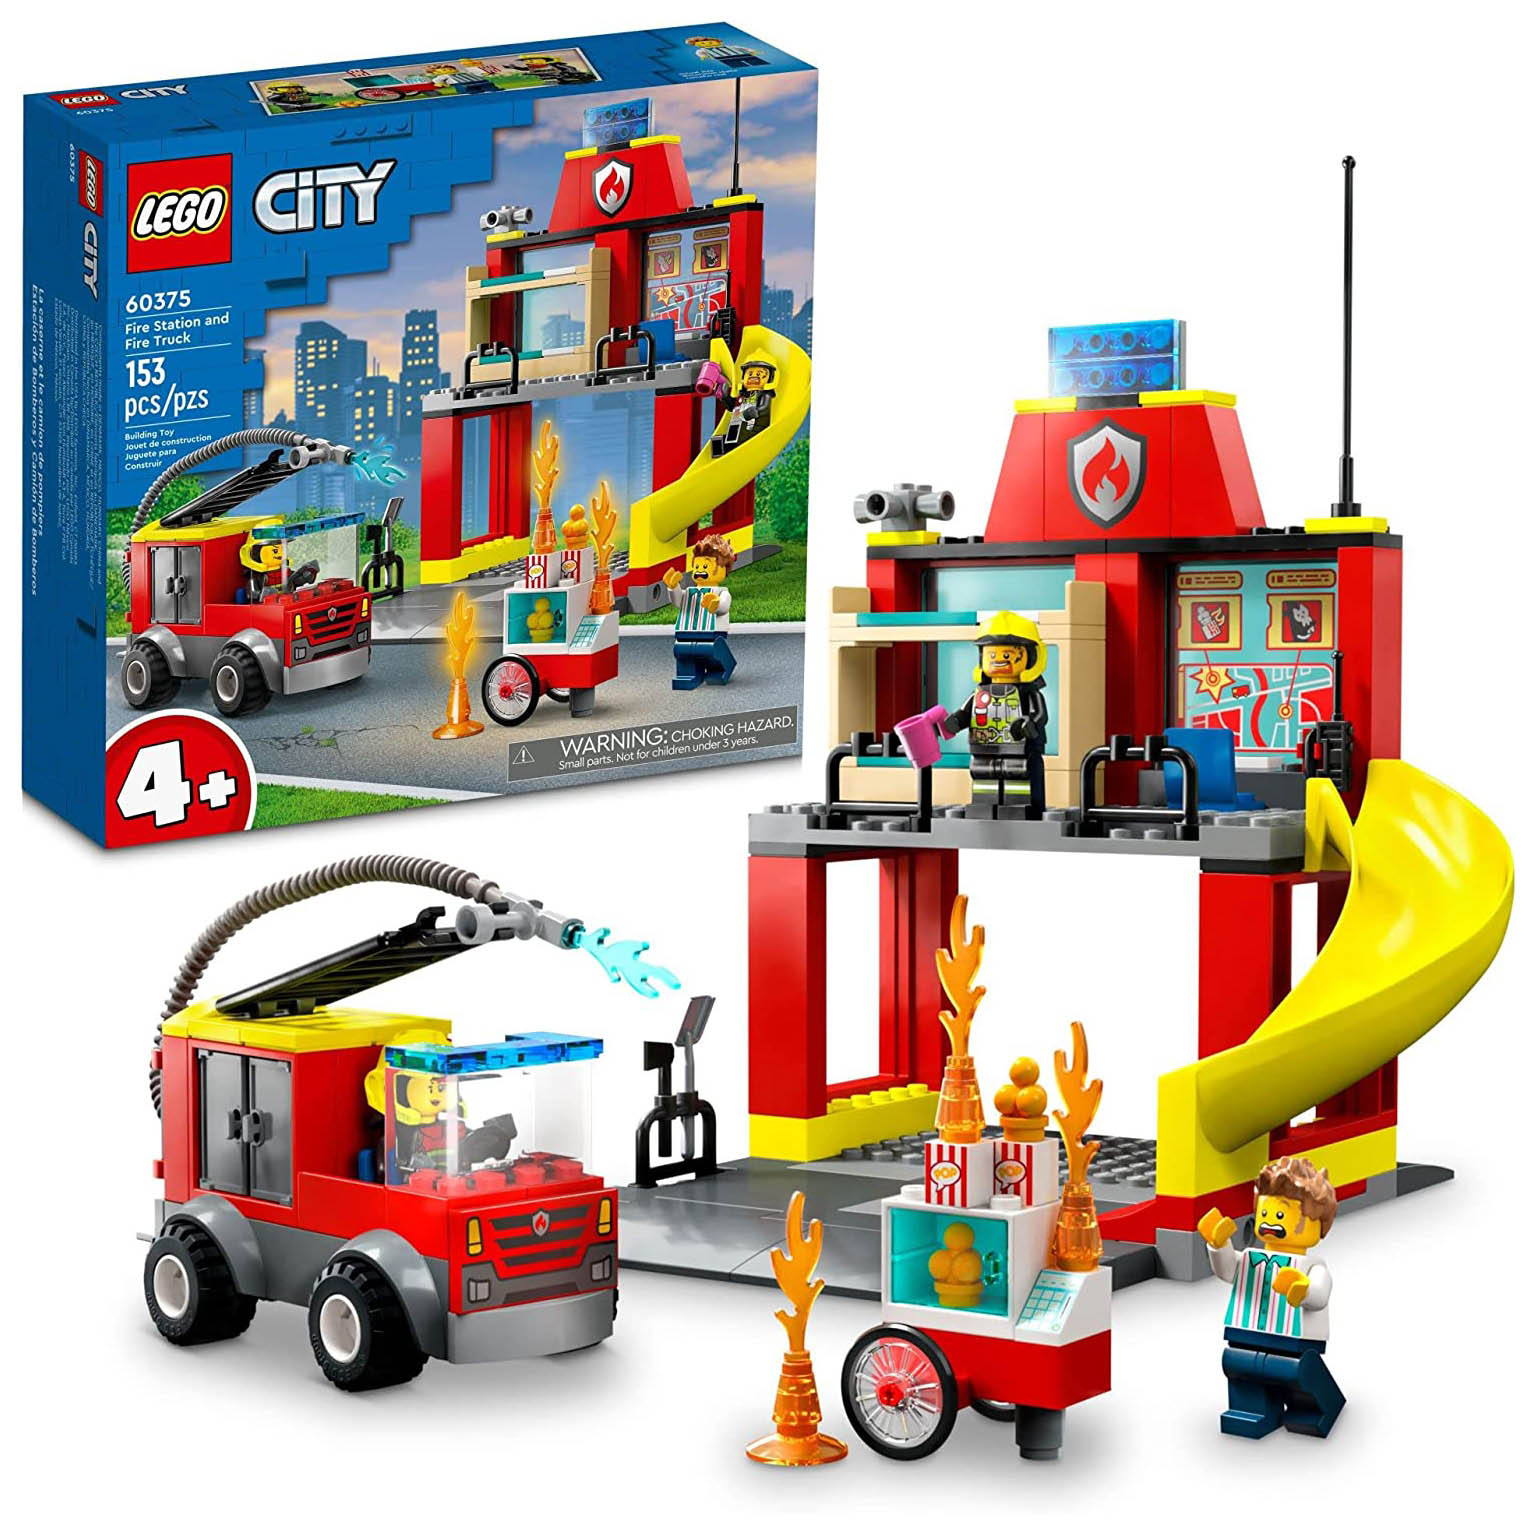 Конструктор LEGO City  Пожарная часть и пожарная машина, 153 детали, 60375 lego city строительные машины и кран с шаром для сноса 60391